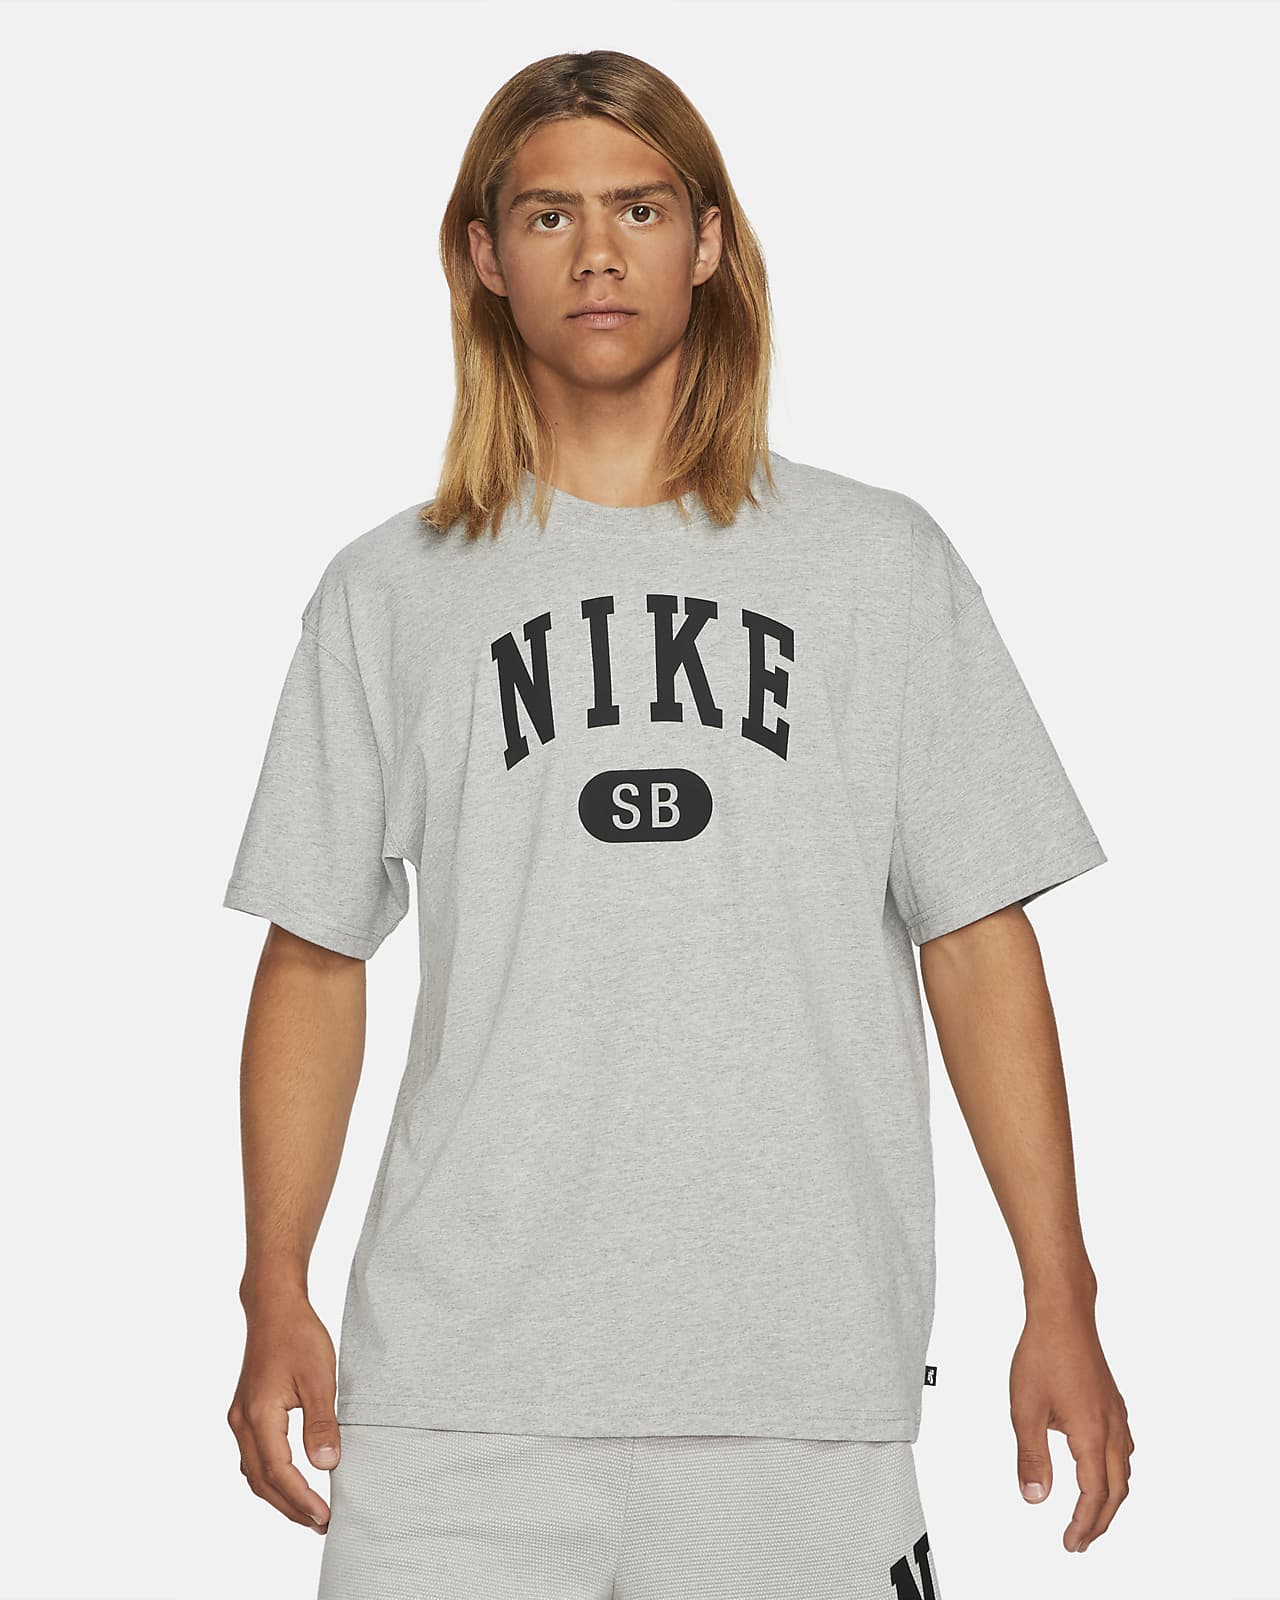 nike sb oversized t shirt